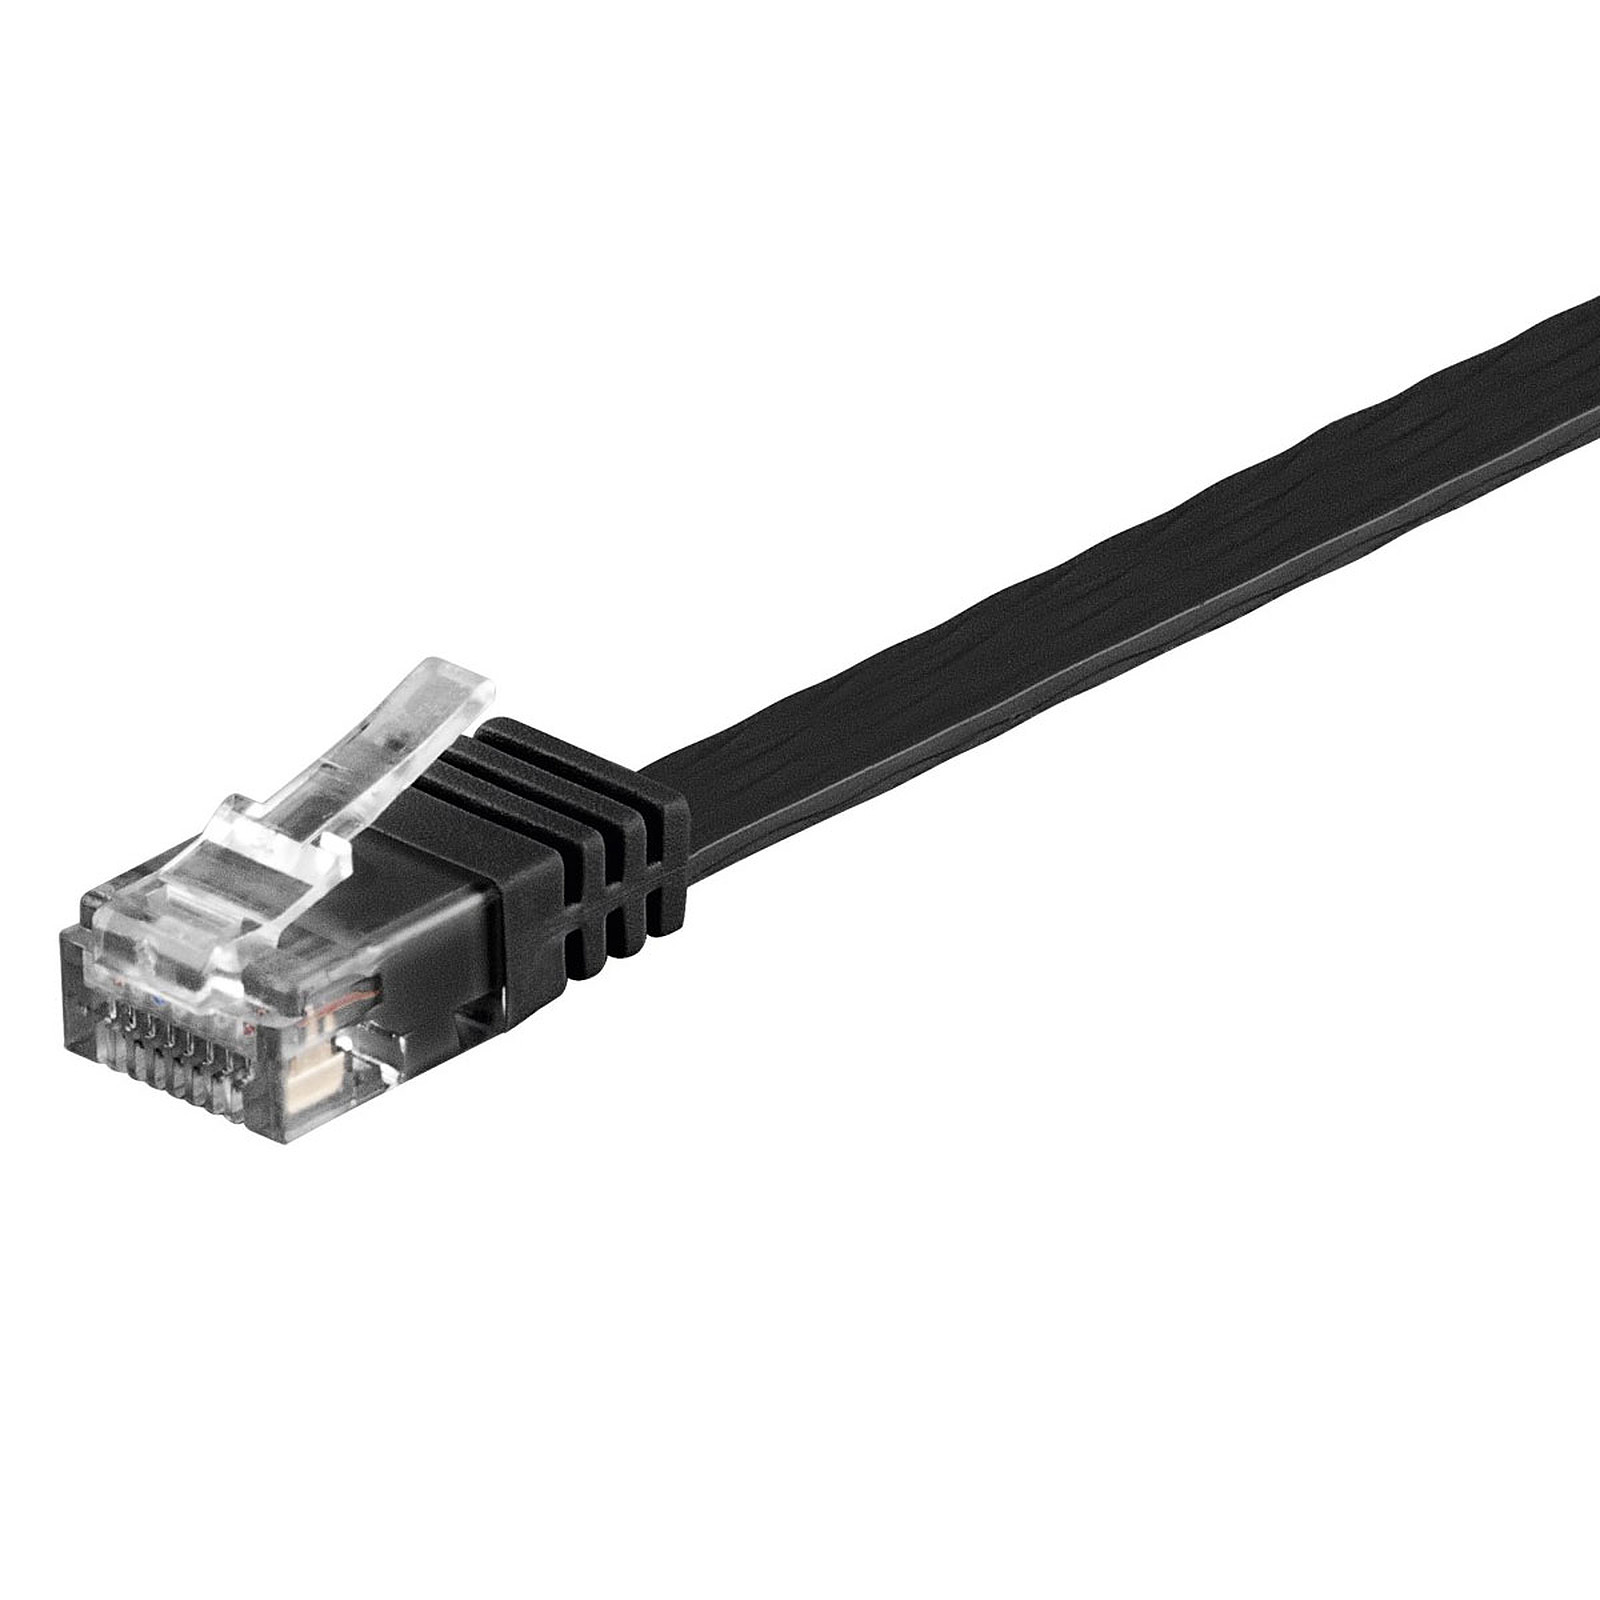 Cable RJ45 plat categorie 6 U/UTP 3 m (Noir) - Cable RJ45 Generique